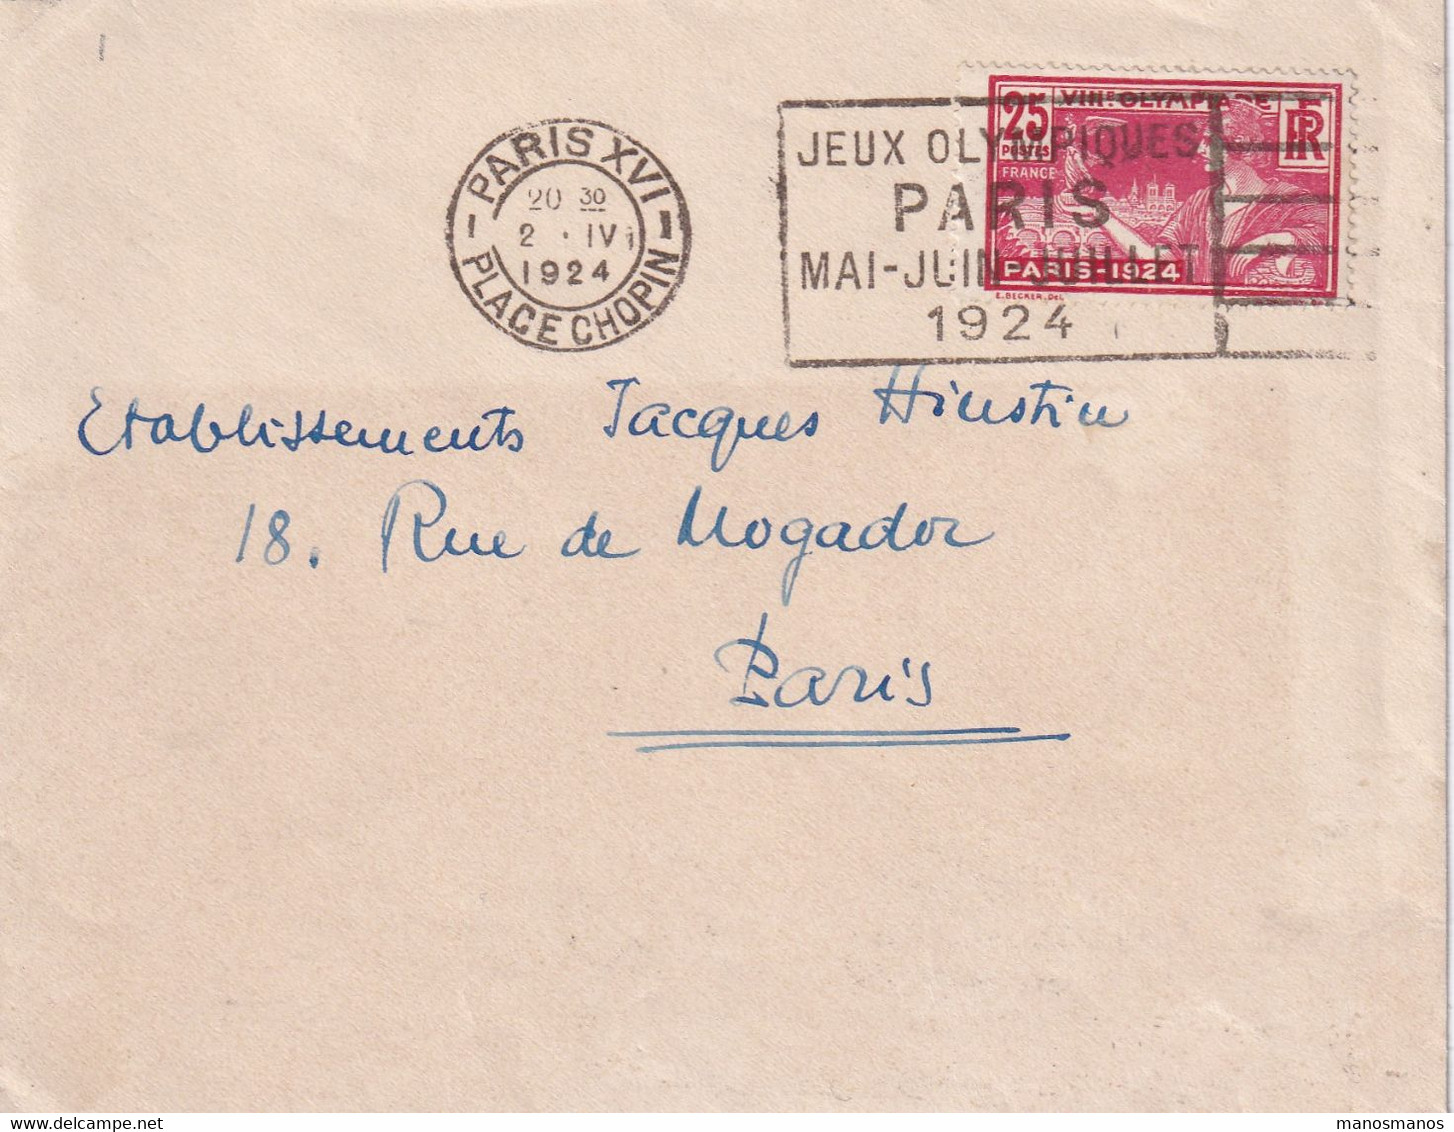 DDX 908 - J.O. PARIS 1924 - Lettre TP Jeux Olympiques Cachet Mécanique  PARIS XVI Place Chopin 1924 - LUXE !! - Sommer 1924: Paris